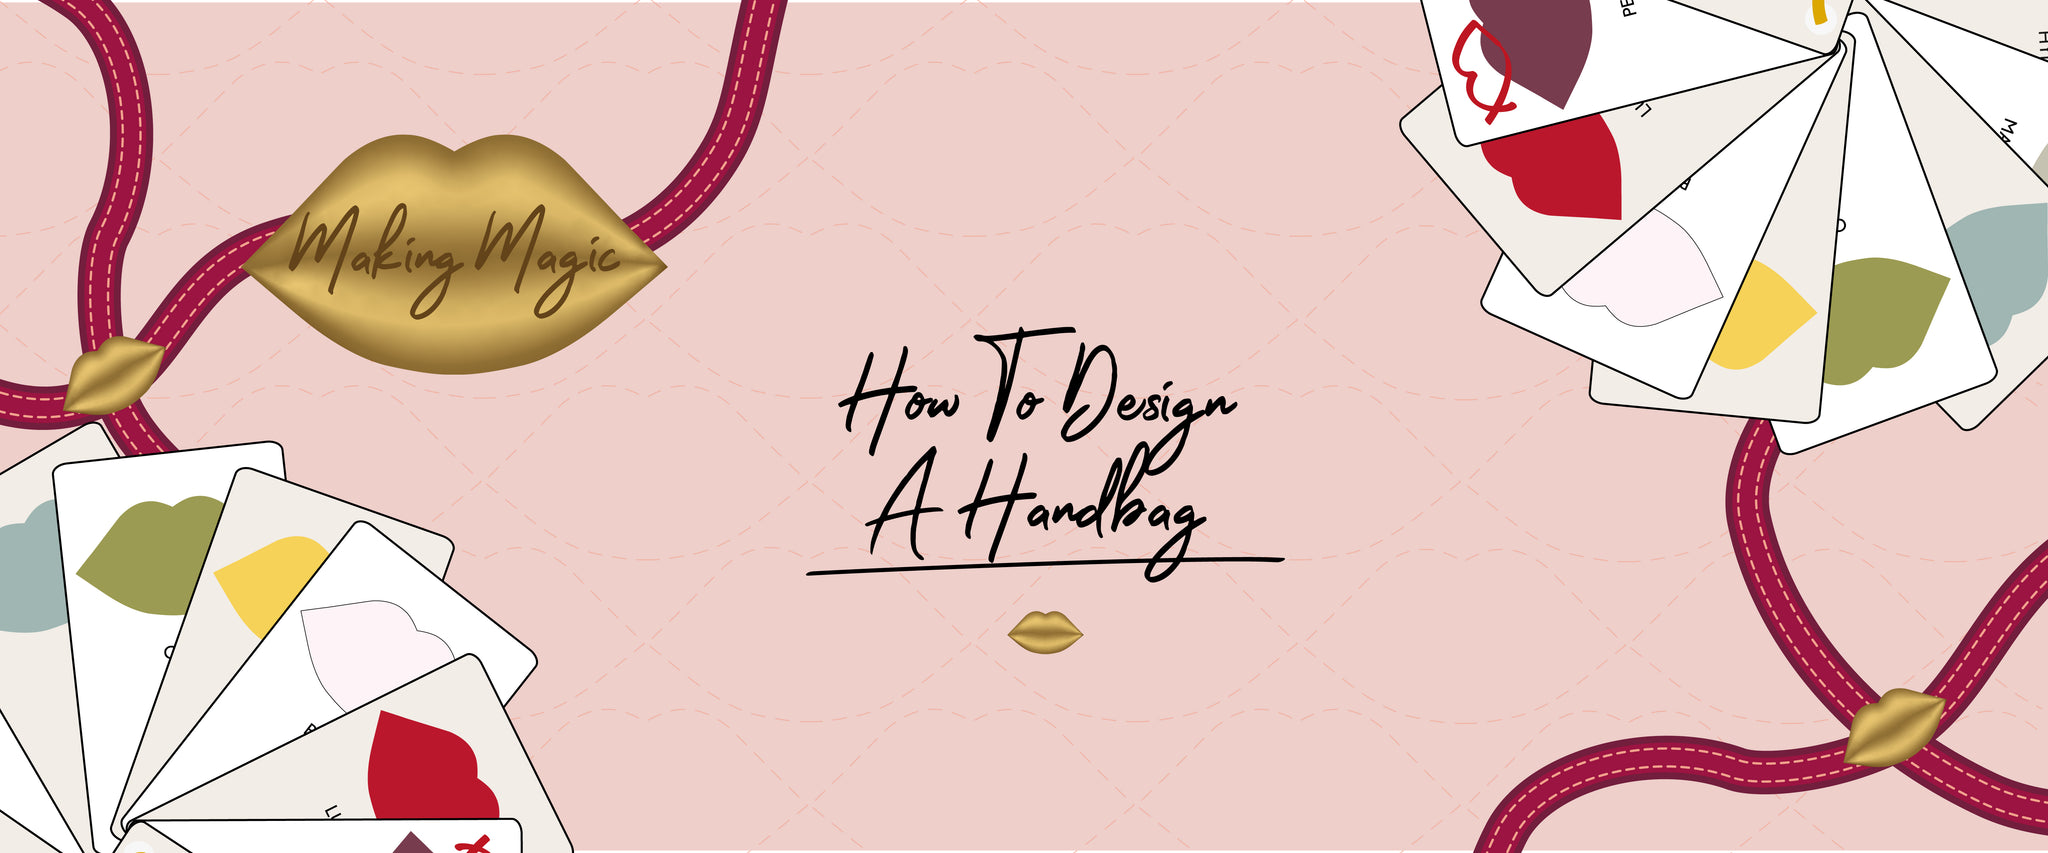 How To Design A Handbag